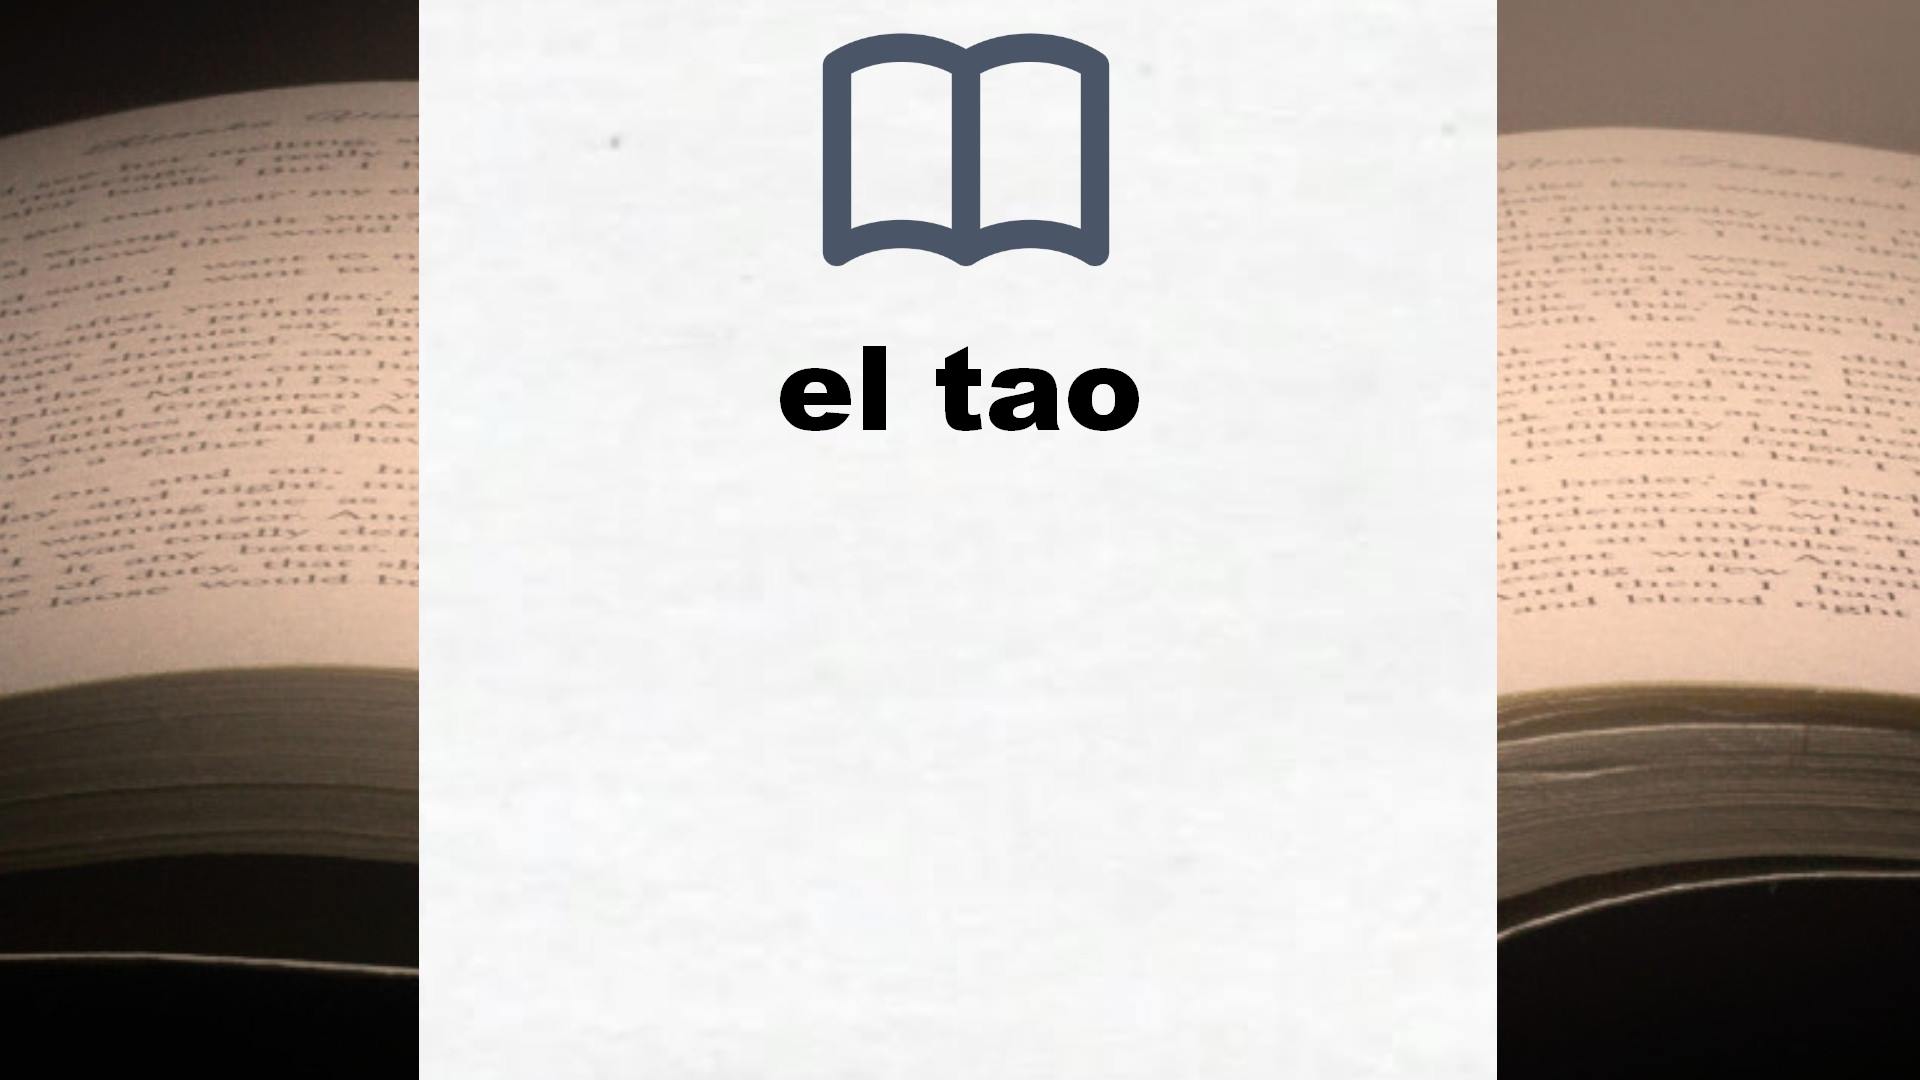 Libros sobre el tao